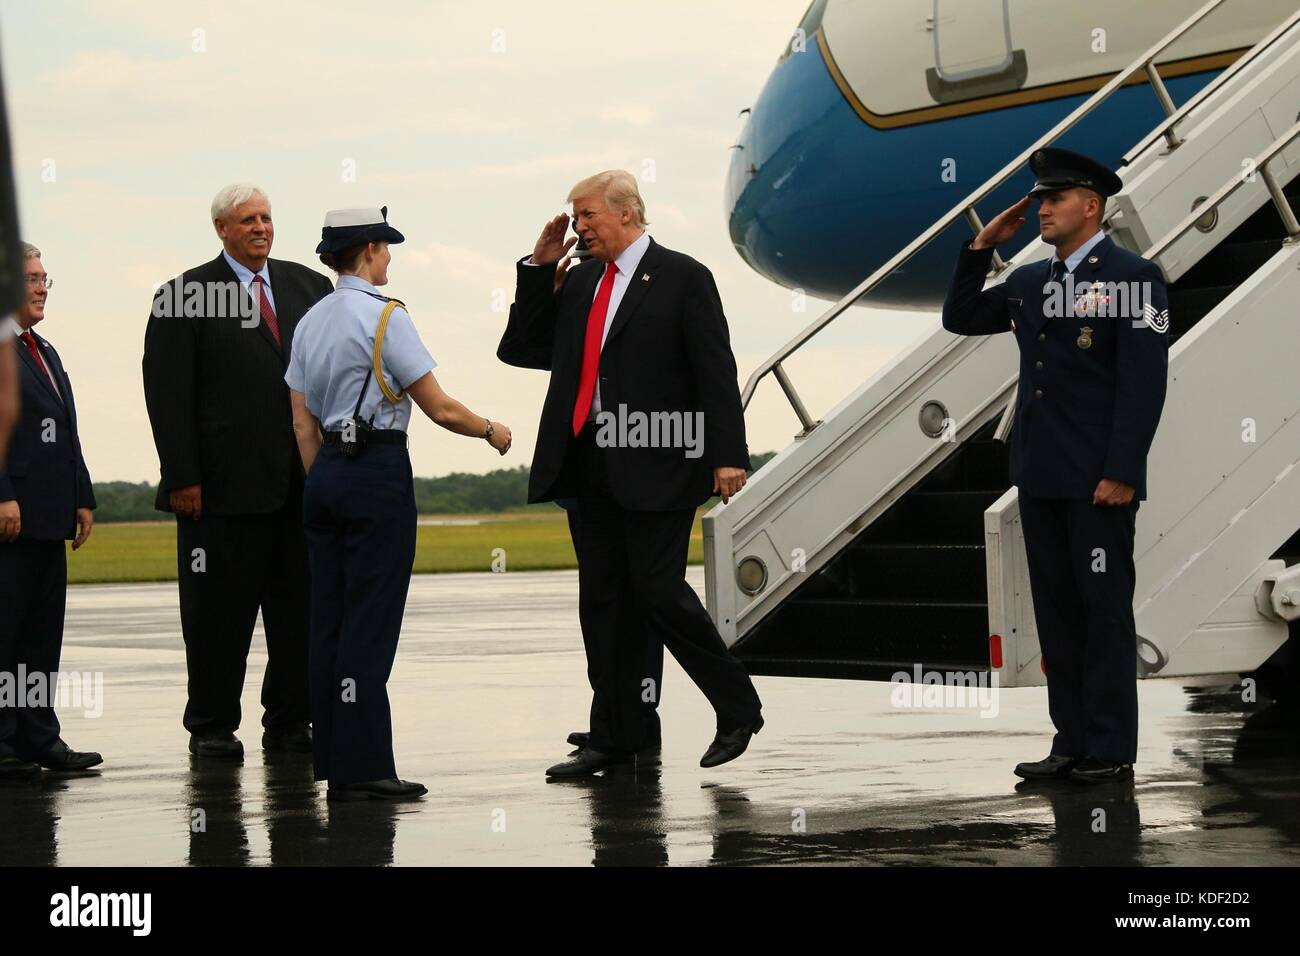 El presidente de Estados Unidos, Donald triunfos saluda a soldados de EE.UU. como él llega al aeropuerto del condado de Raleigh memorial de los boy scouts de América jamboree nacional el 24 de julio de 2017 cerca de Beckley, West Virginia. (Foto por Dustin d. biven via planetpix) Foto de stock